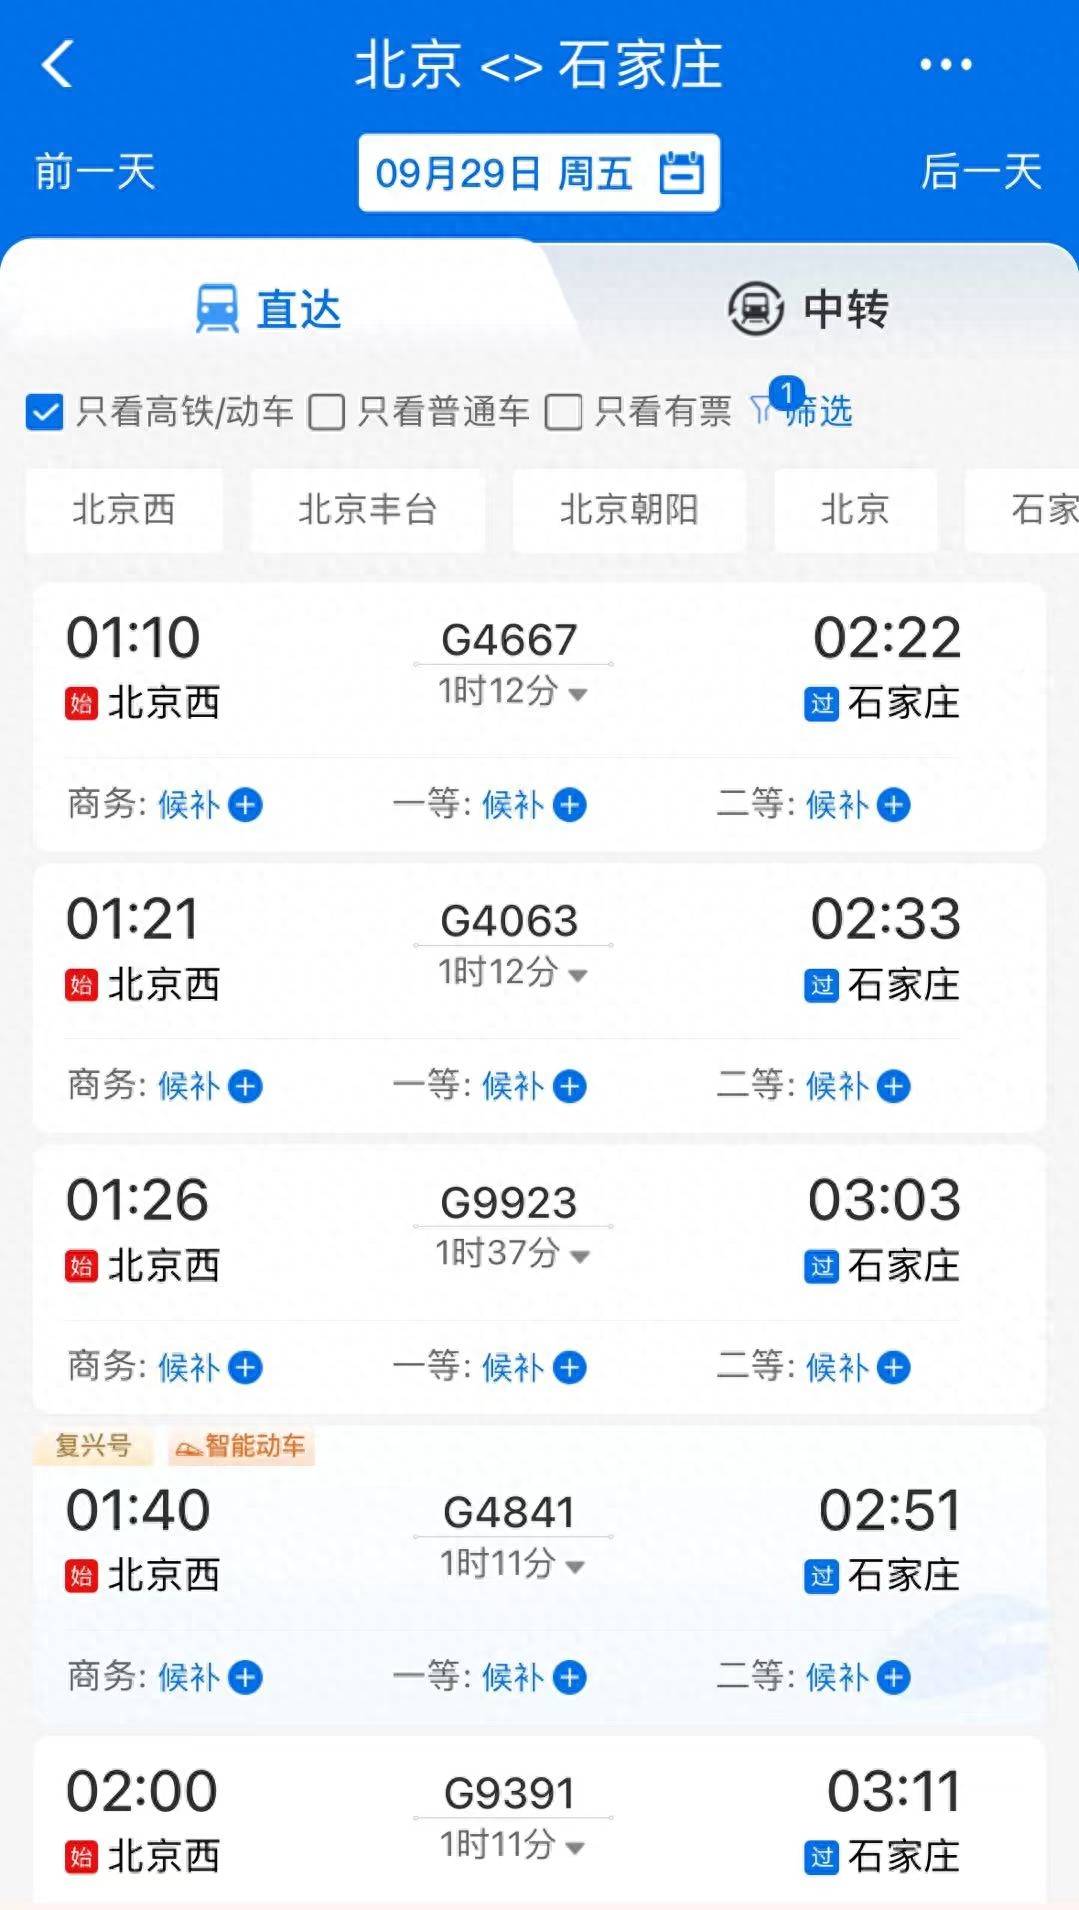 高铁上海青岛时刻表到青岛北站_青岛到上海高铁时刻表_高铁上海至青岛